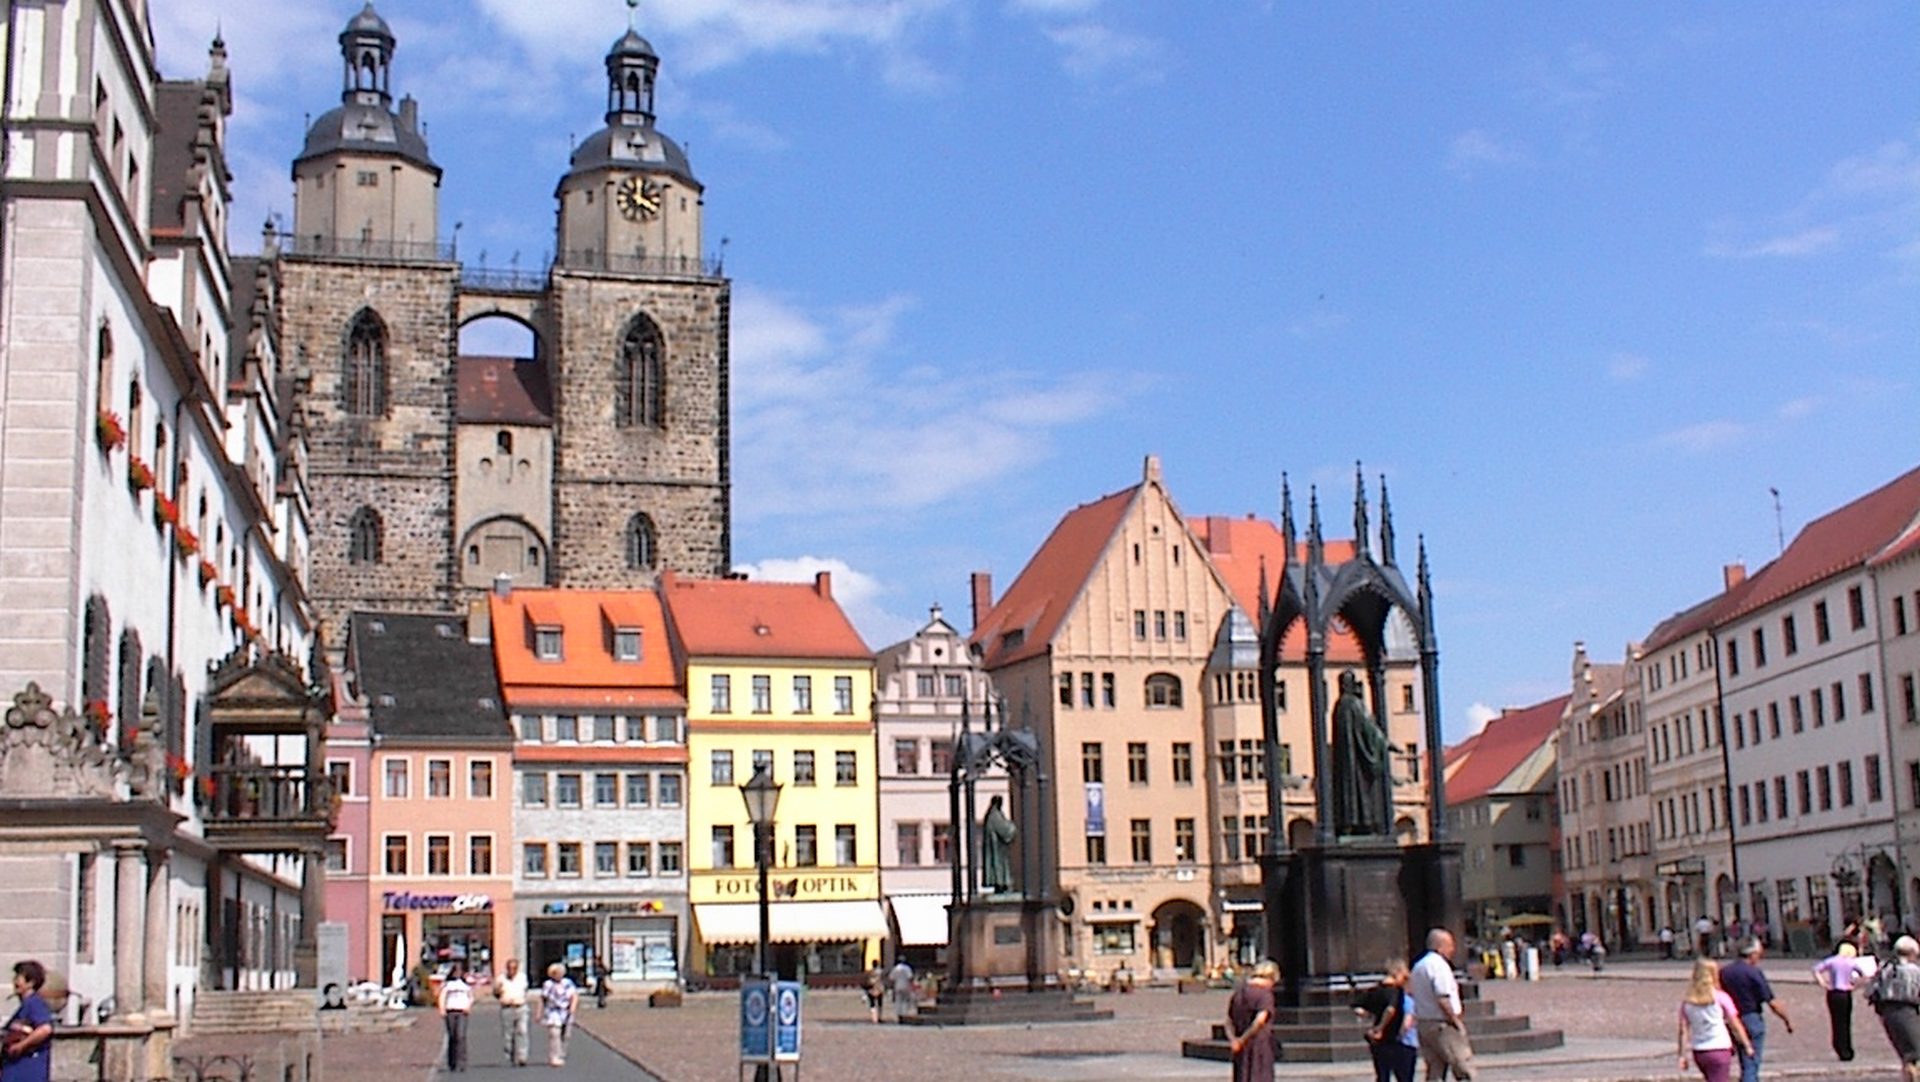 Wittenberg, la ville du réformateur Martin Lurther, au nord de l'Allemagne (photo wikimedia commons Anneli Salo CC BY 3.0)